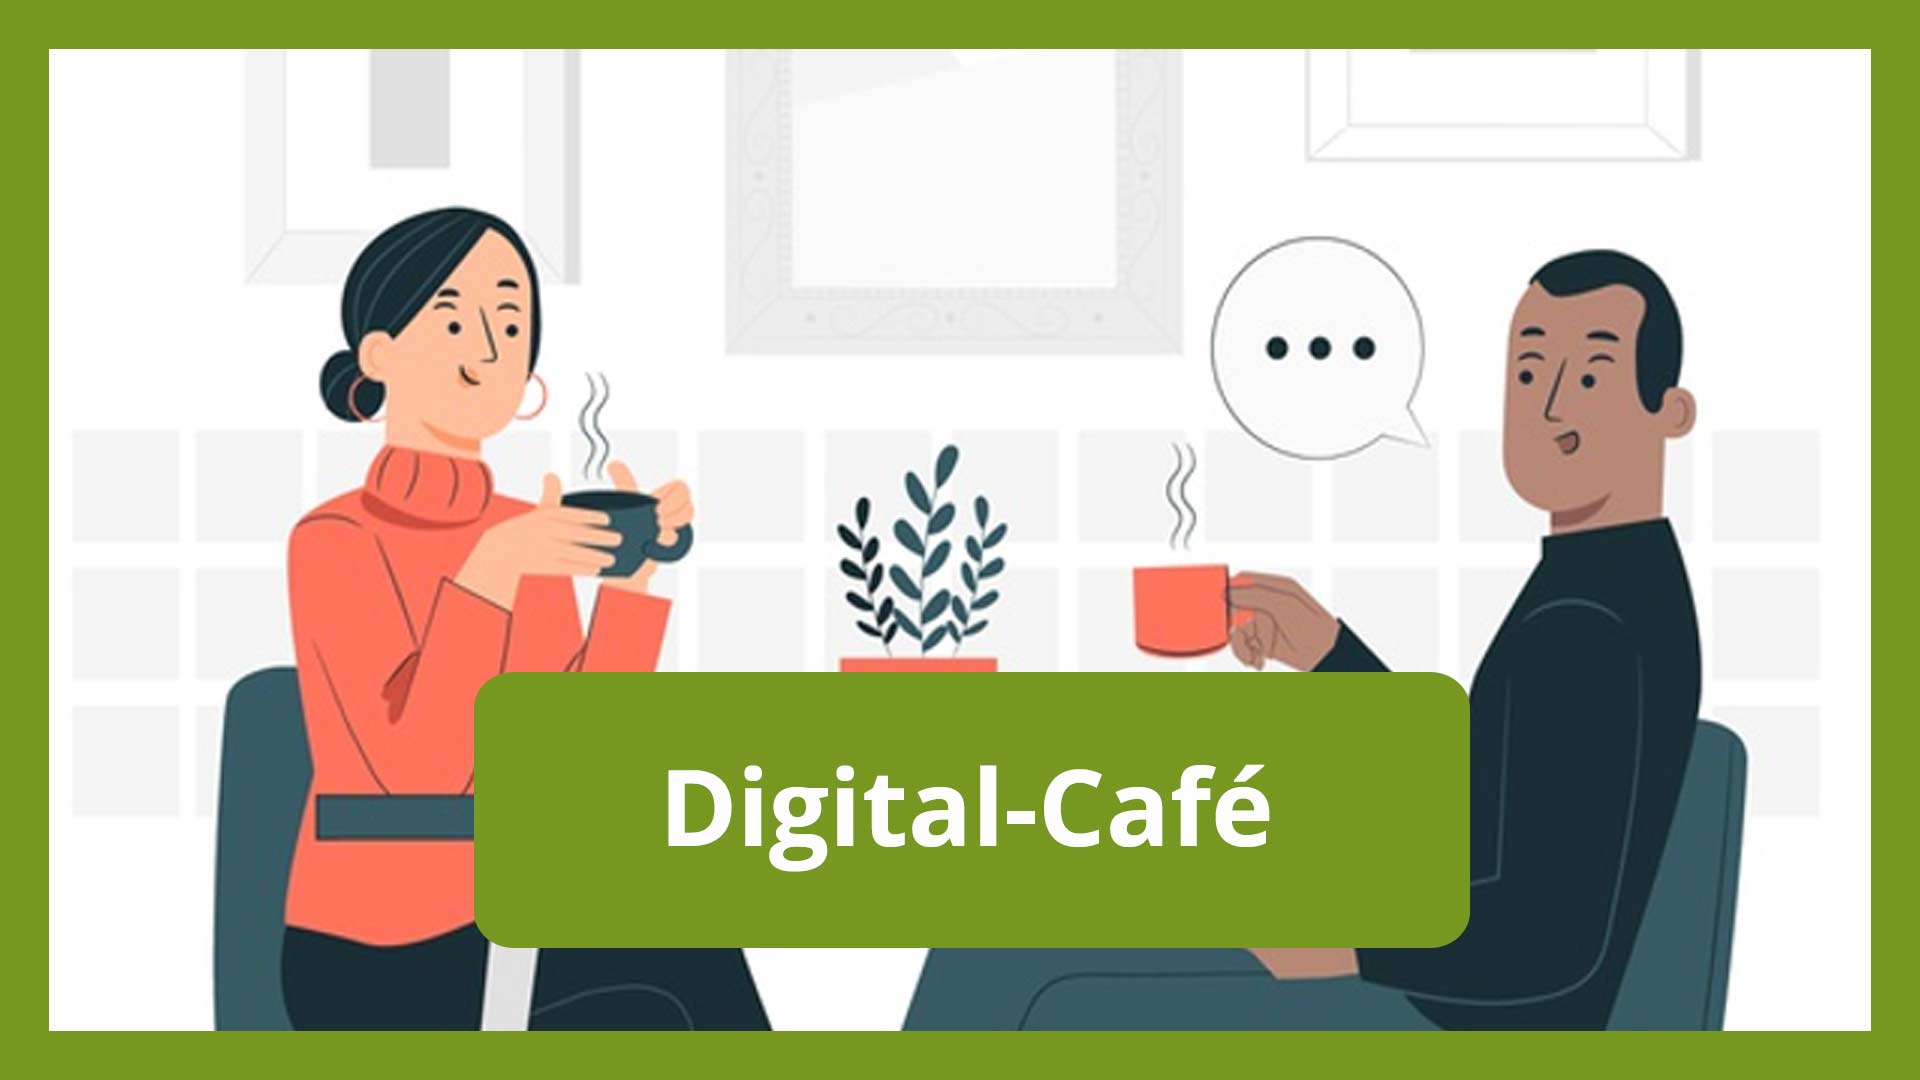 Digital-Café